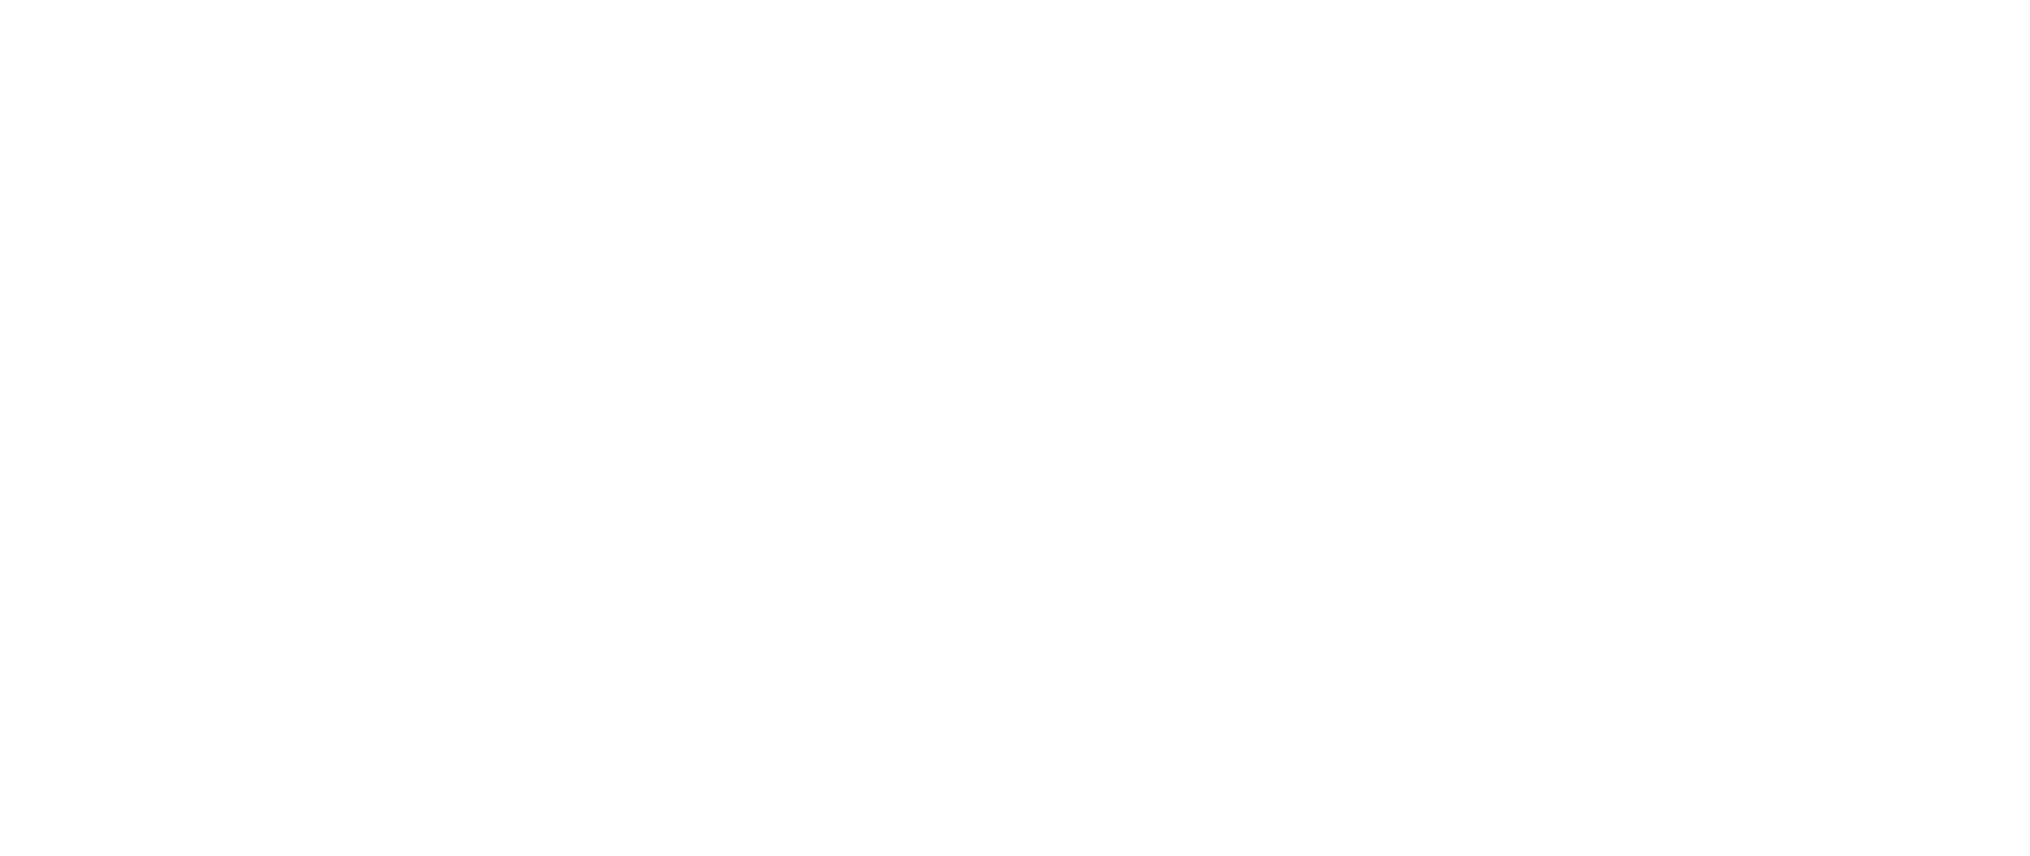 Barbados Light & Power 